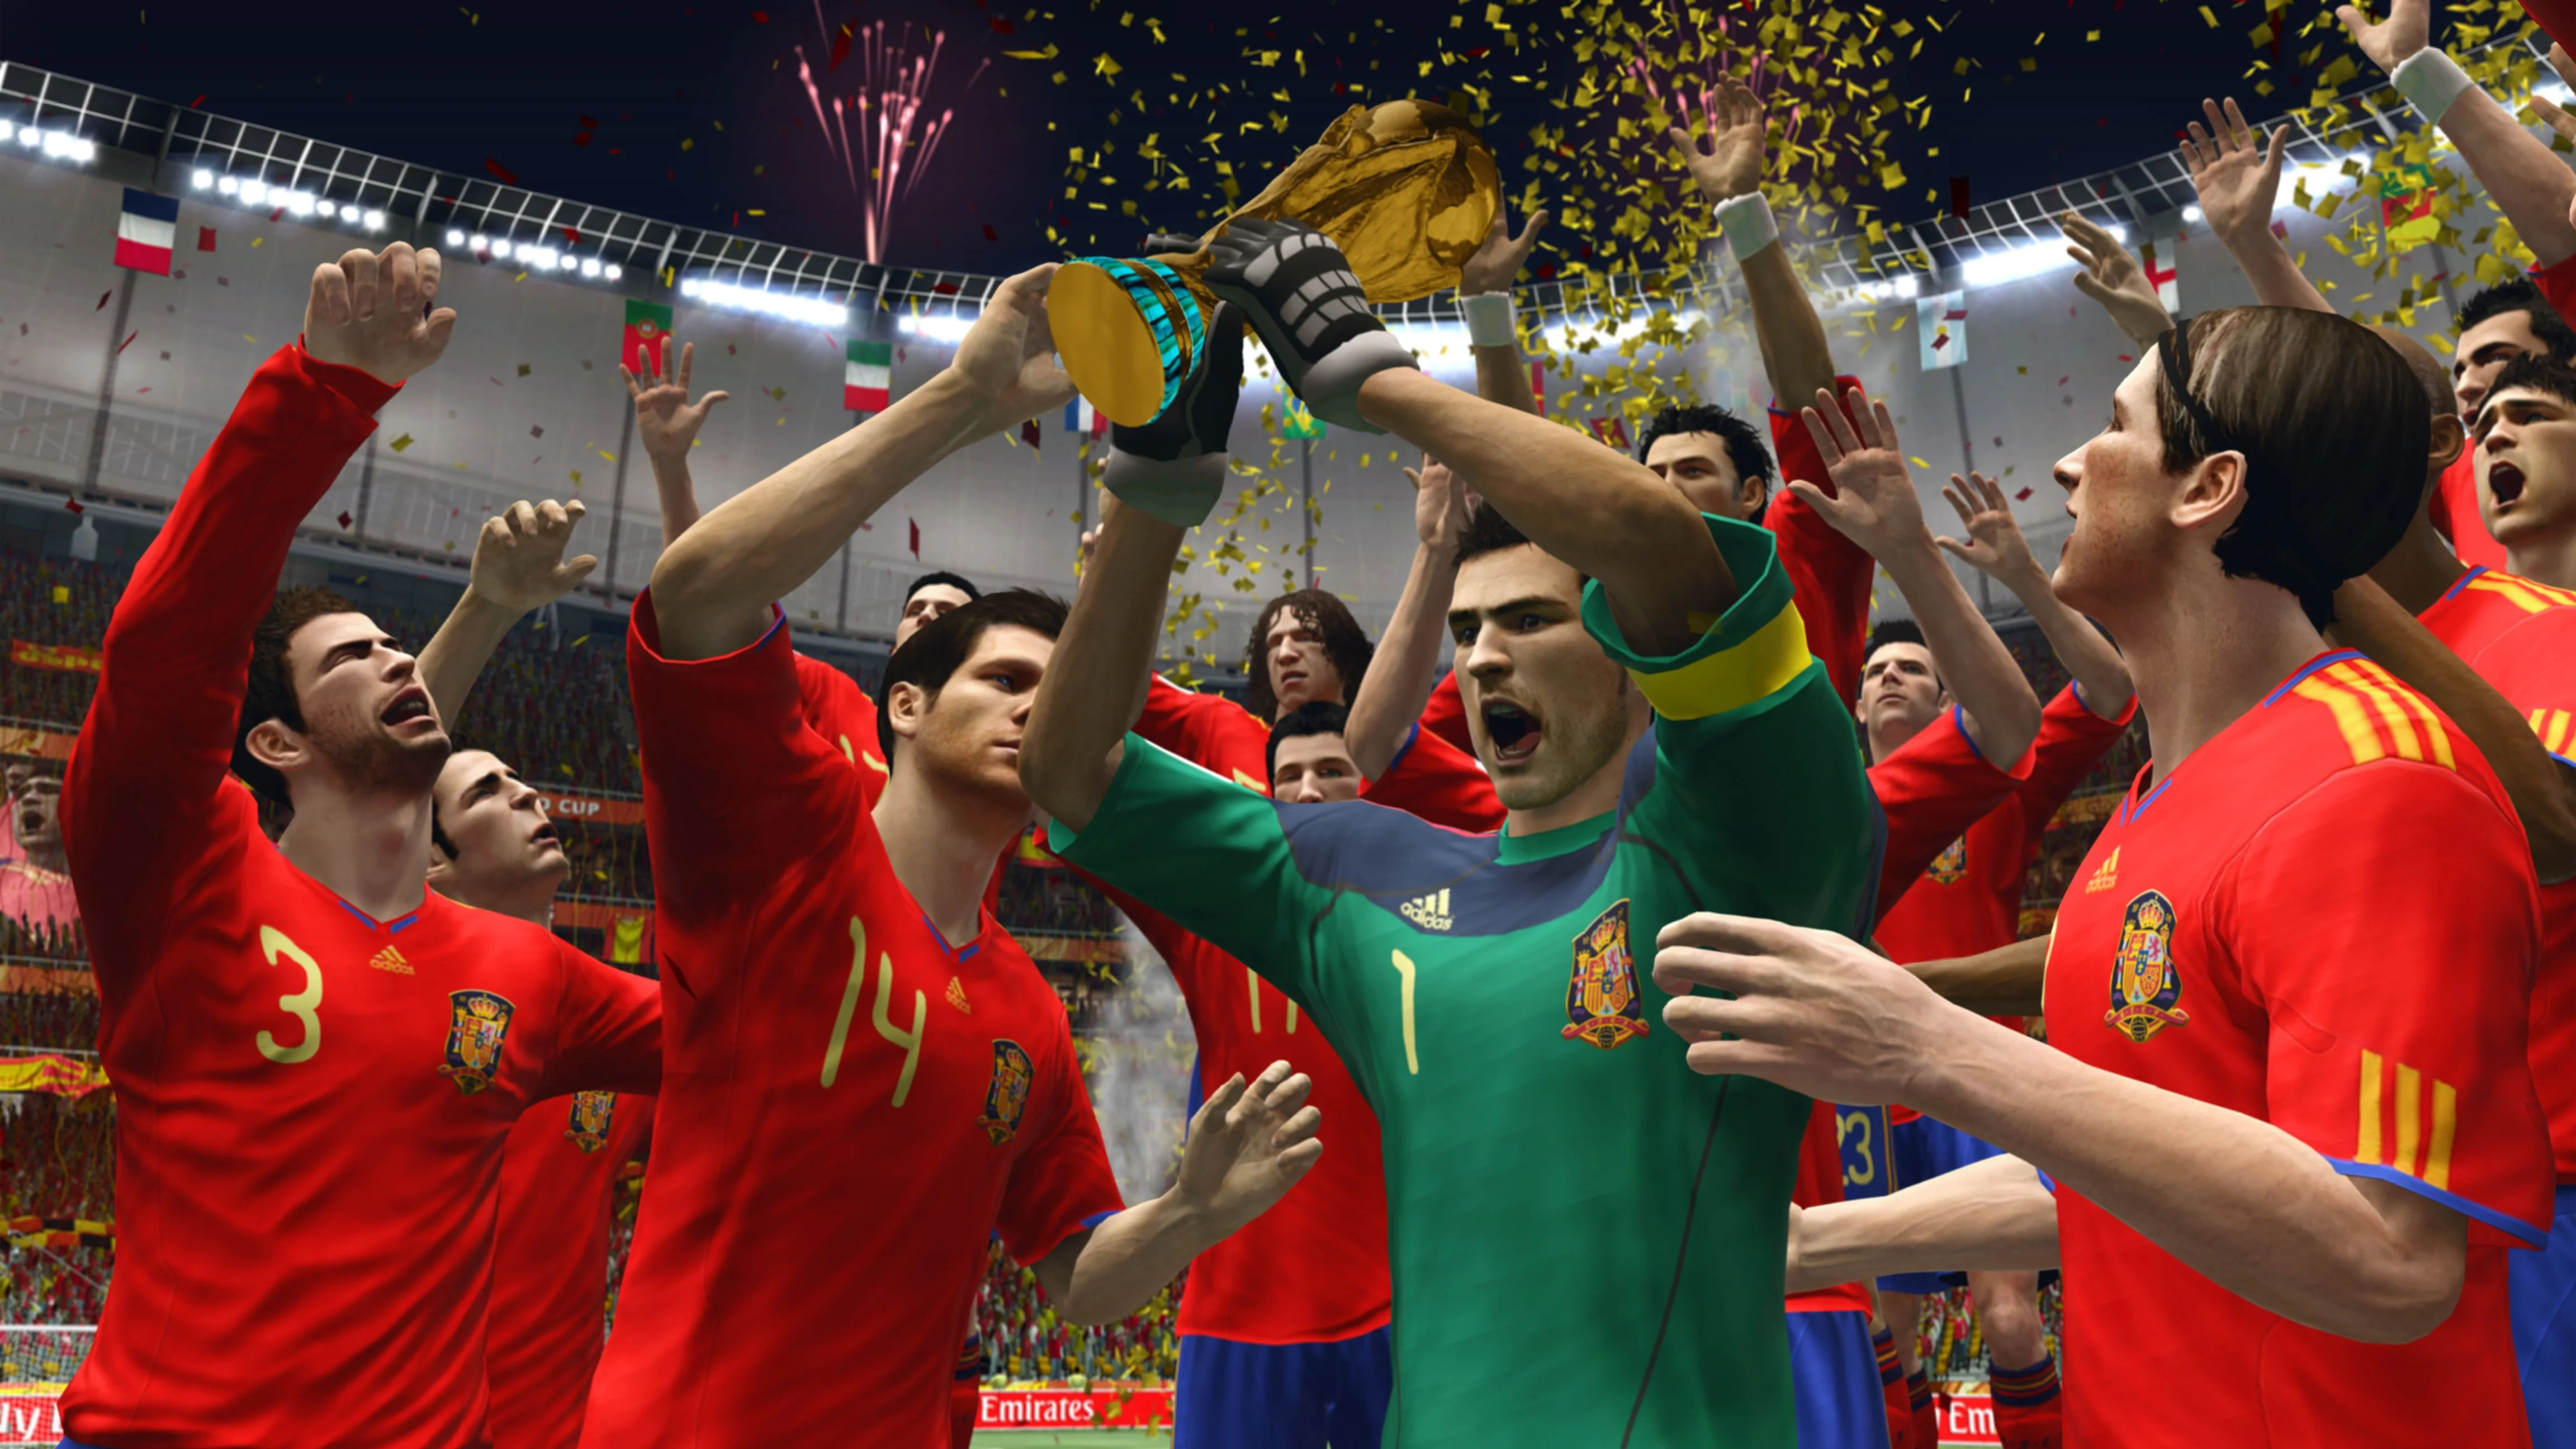 Второй этап закрытого бета-теста FIFA World запущен - изображение обложка